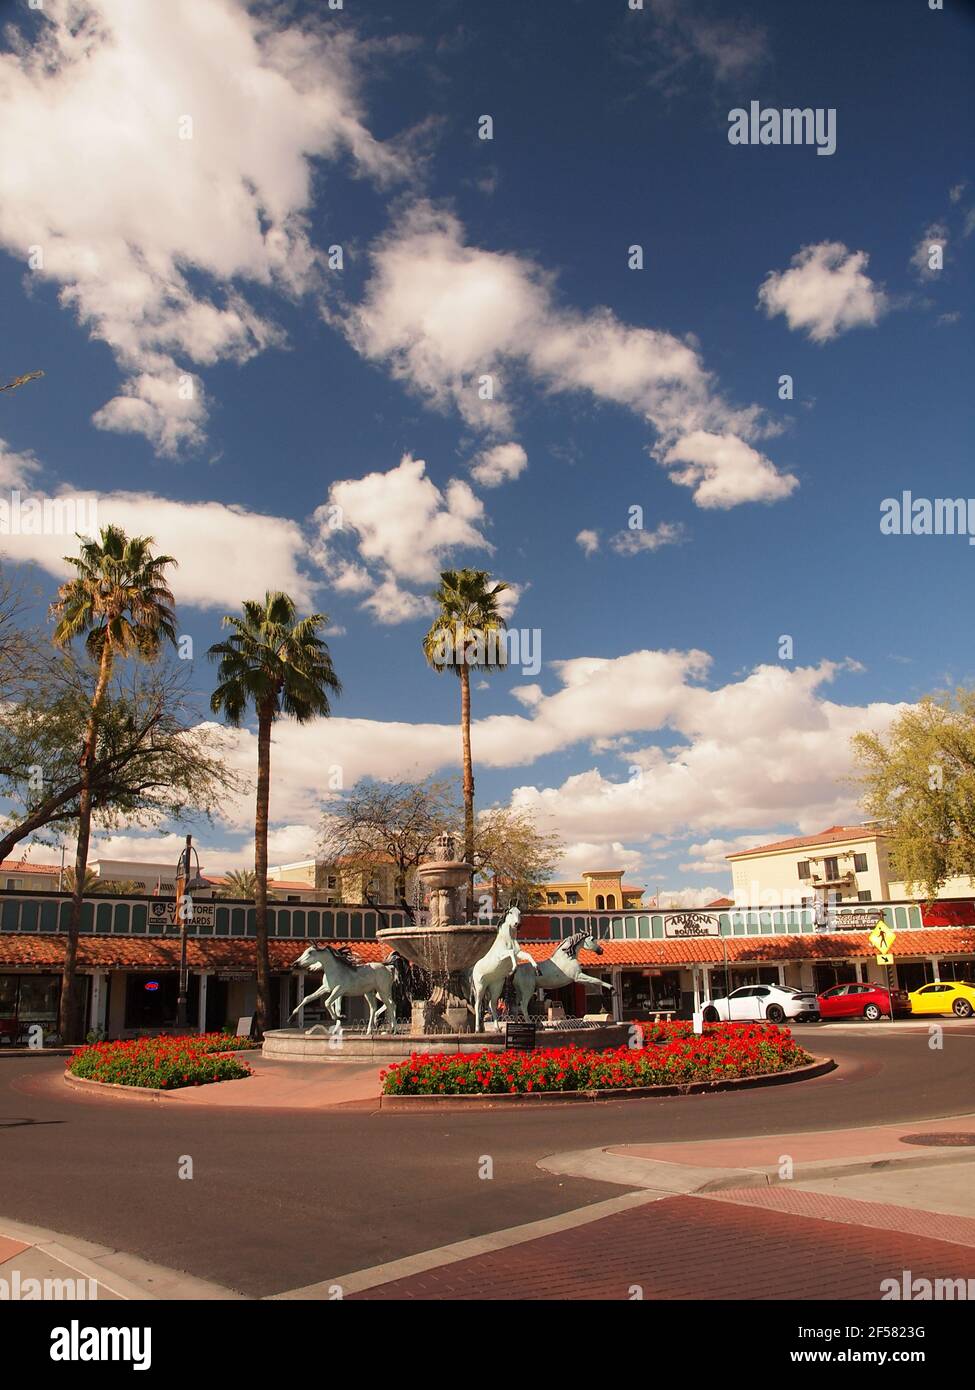 Immagini assortite del centro di Scottsdale, Arizona distretto conosciuto come Old Town Scottsdale. Gli affari e i ristoranti moderni di alto livello abbondano Foto Stock